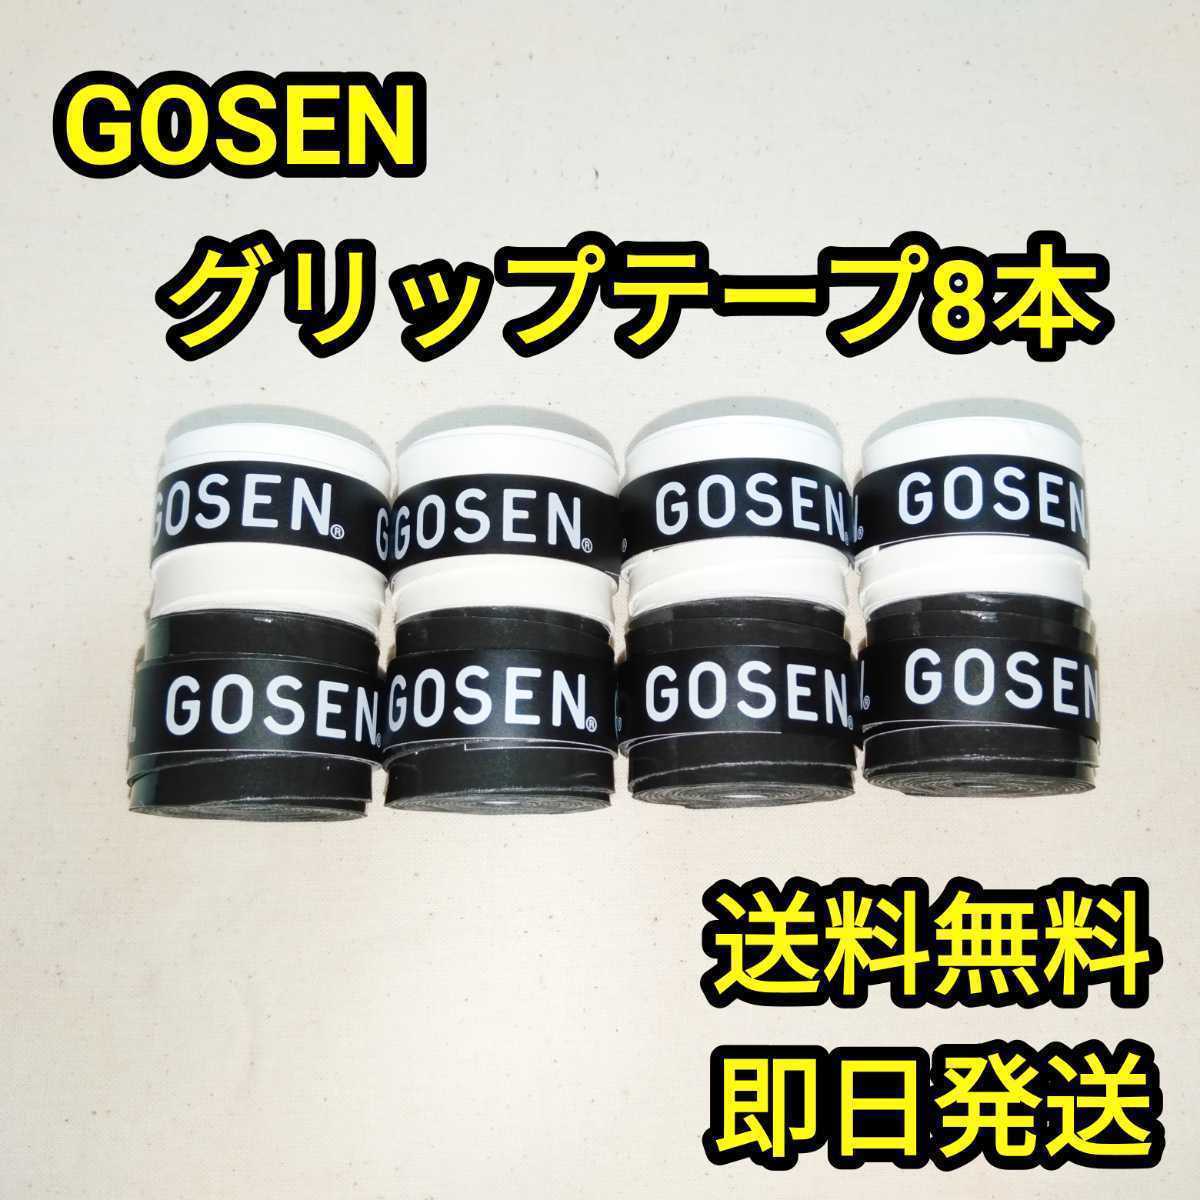 GOSENグリップテープ白黒8本の画像1